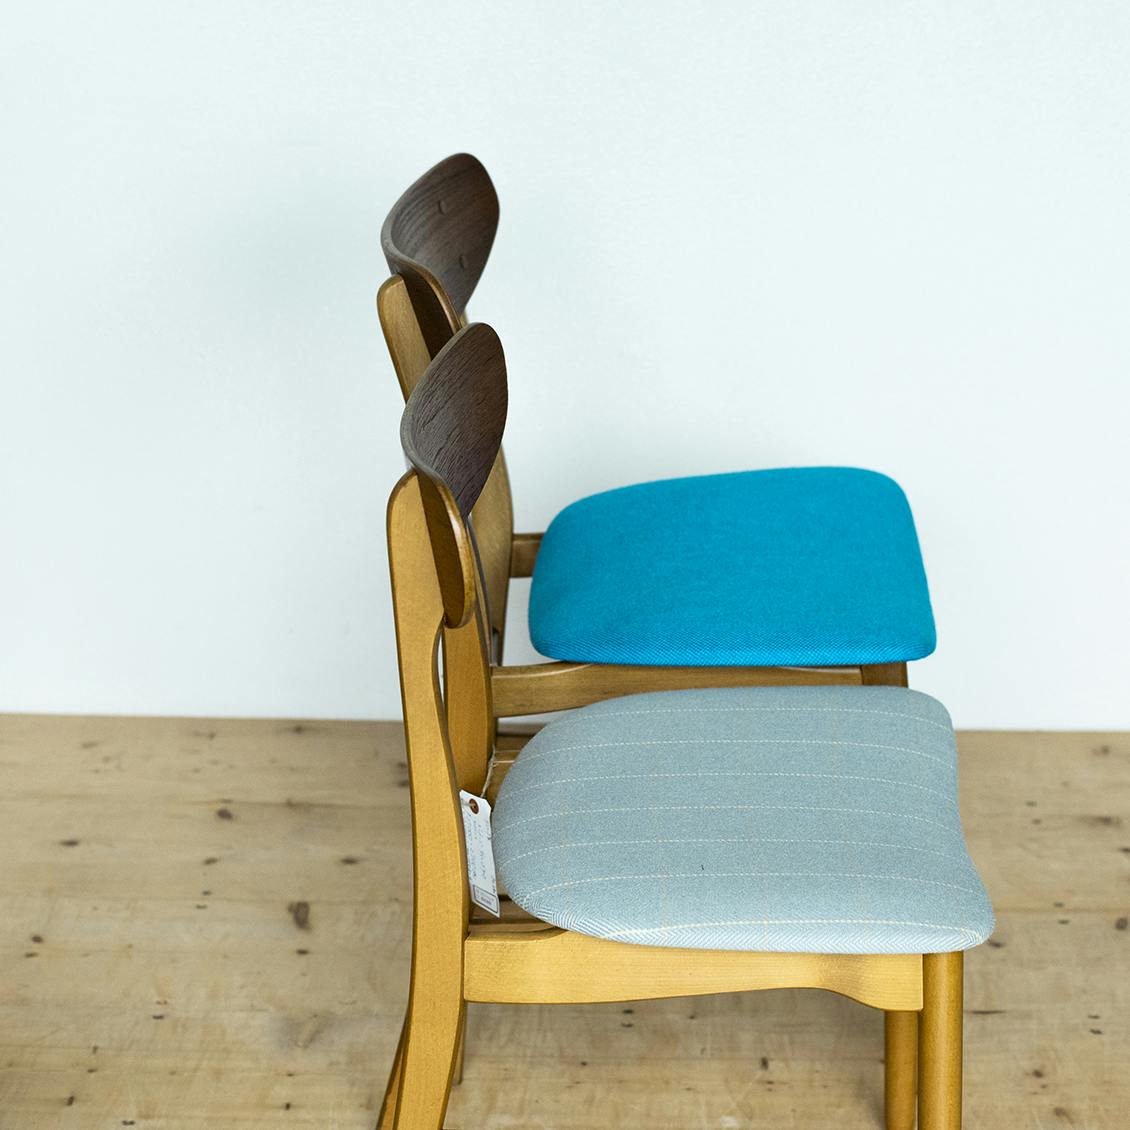 北欧家具taloさんに聞く、座りやすい椅子の選び方。 - 北欧、暮らしの